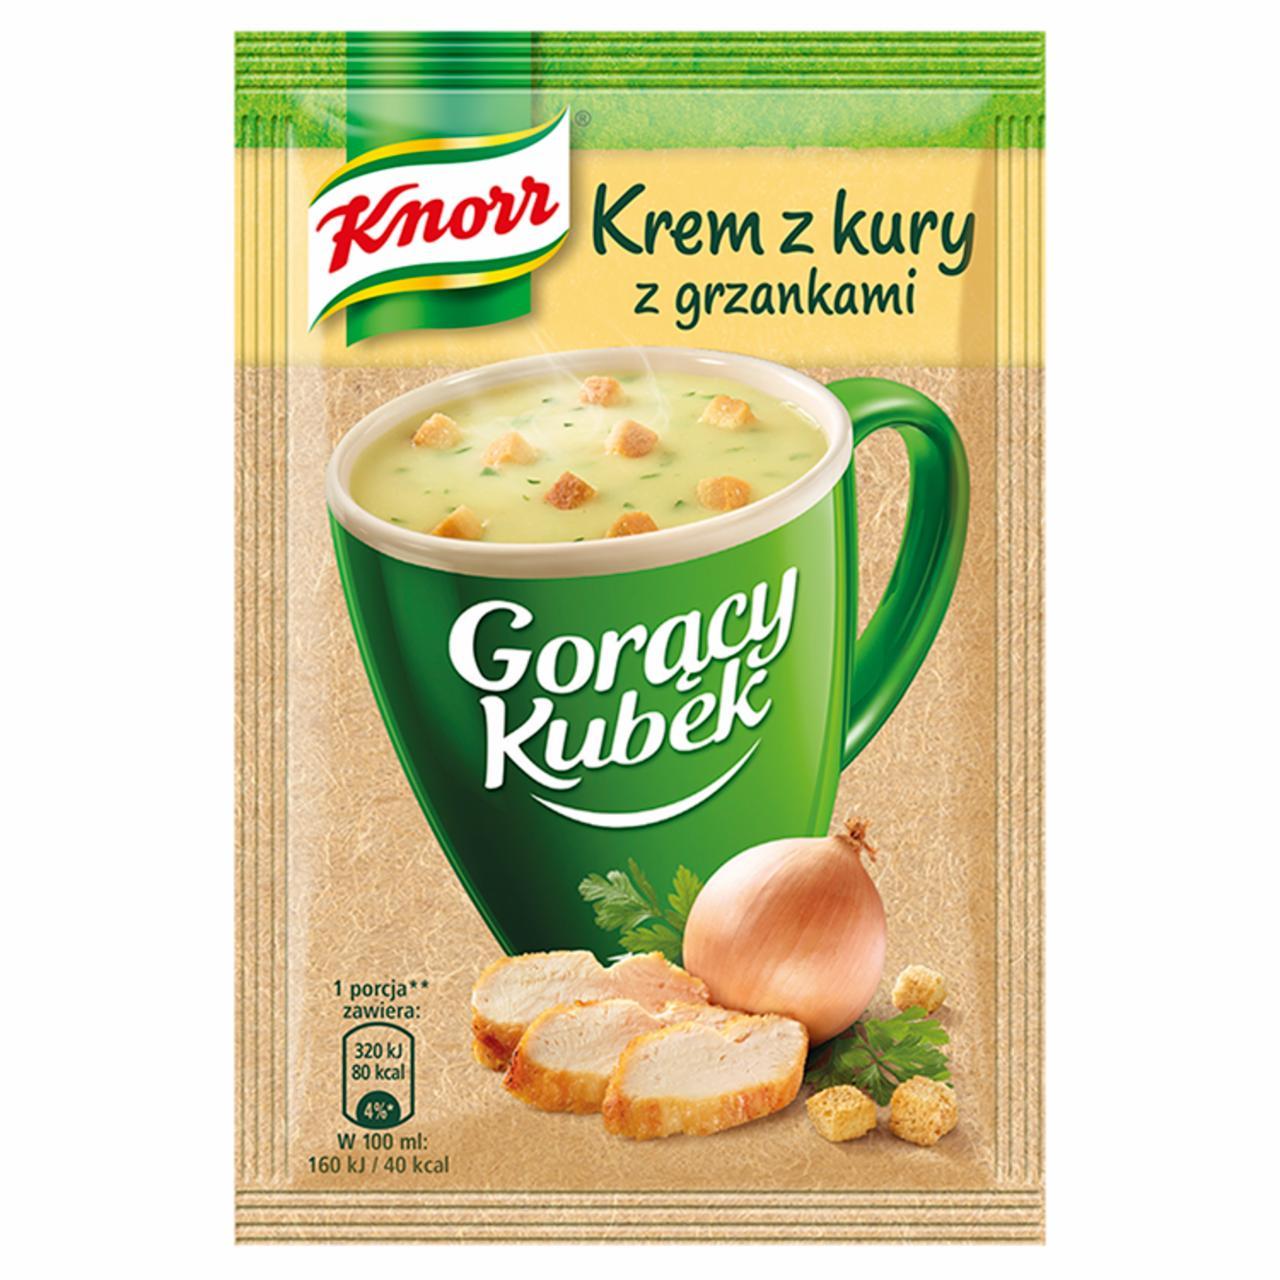 Zdjęcia - Knorr Gorący Kubek Kremowy rosół z grzankami 16 g